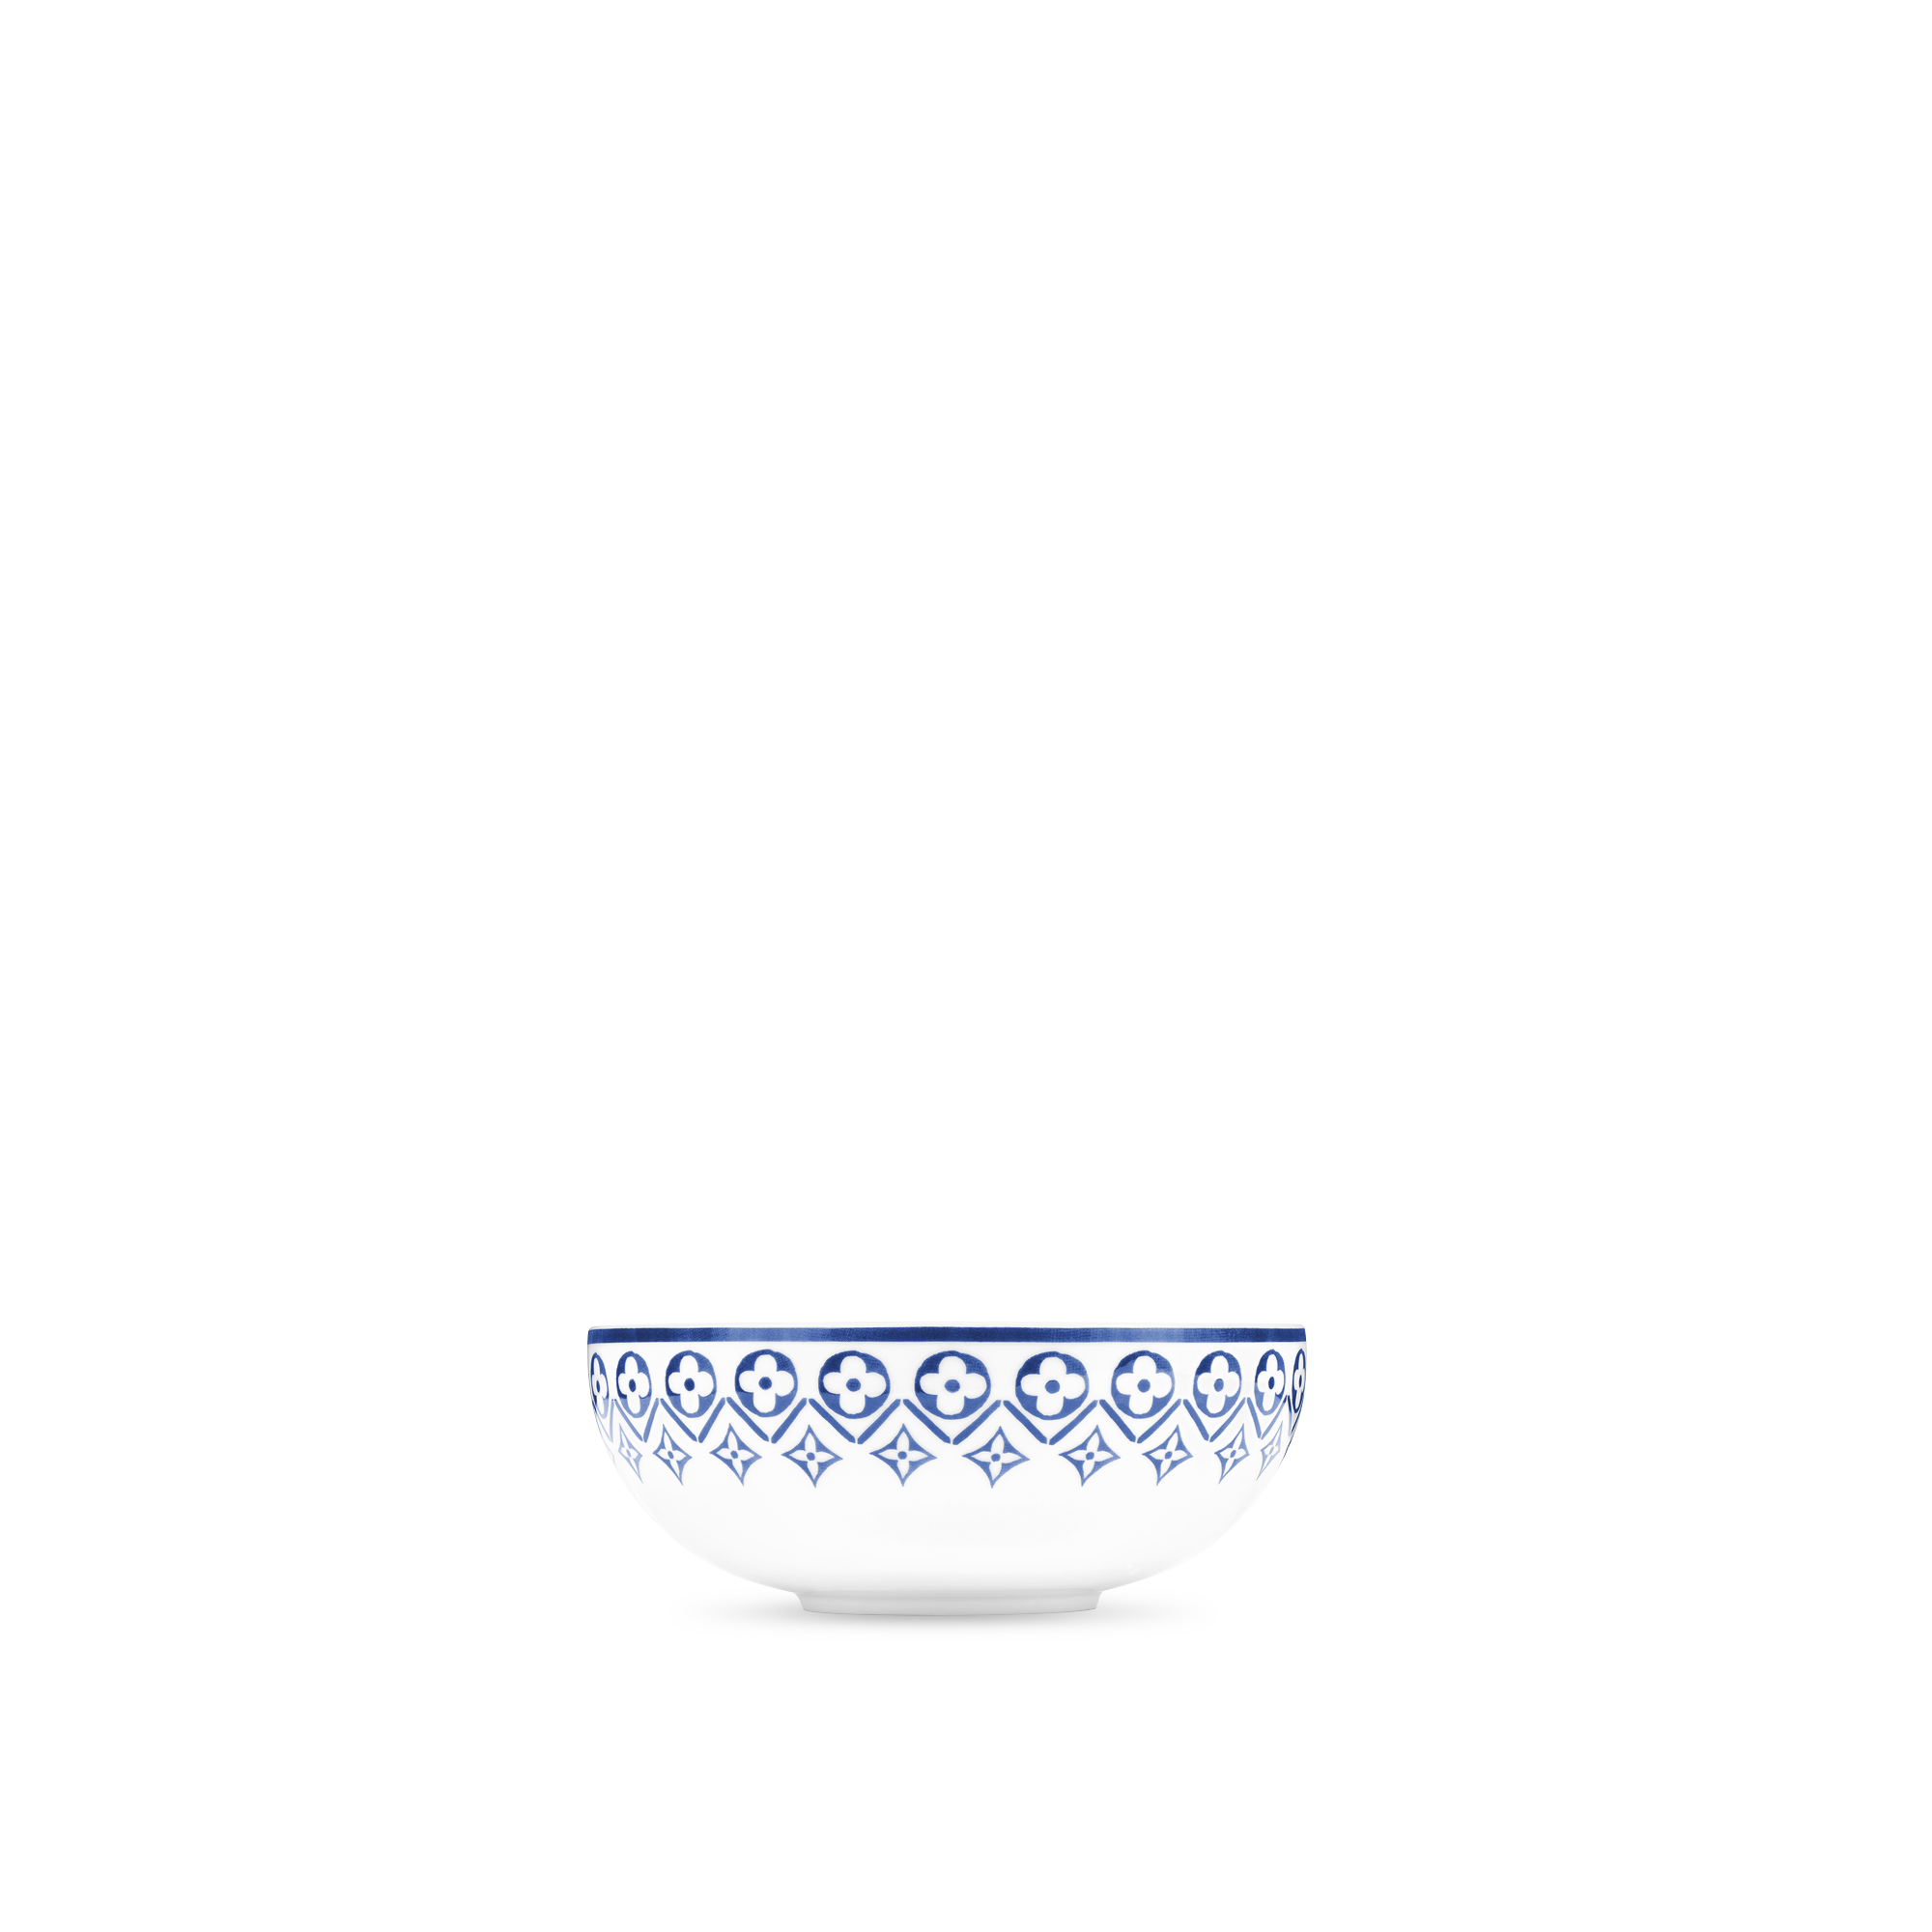 Louis Vuitton презентуют свою первую коллекцию посуды